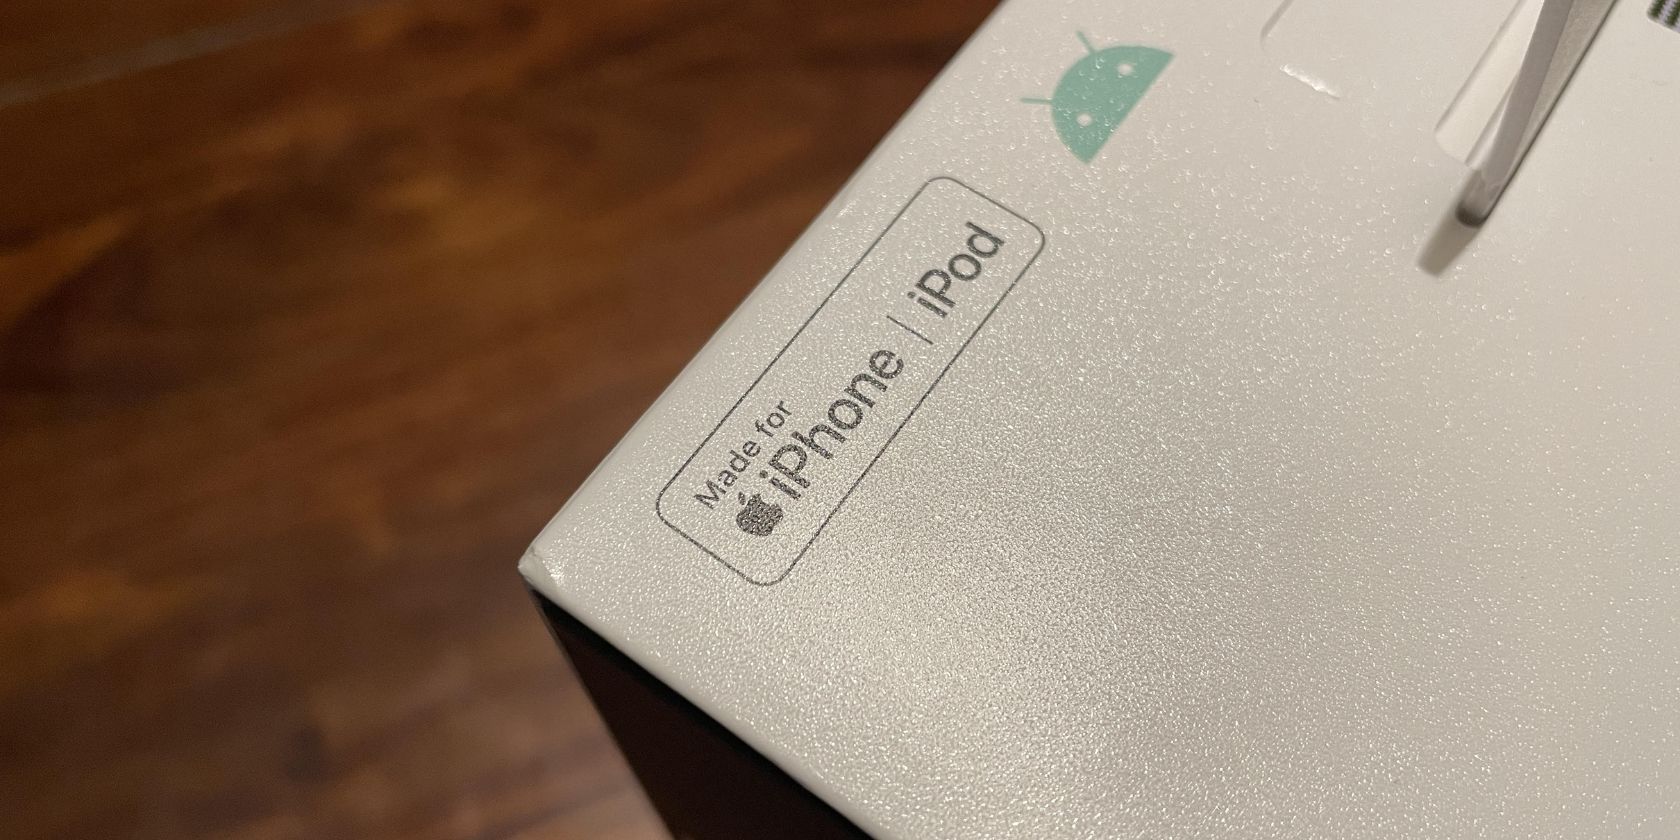 Apple Made for iPhone Branding pada Kotak Produk